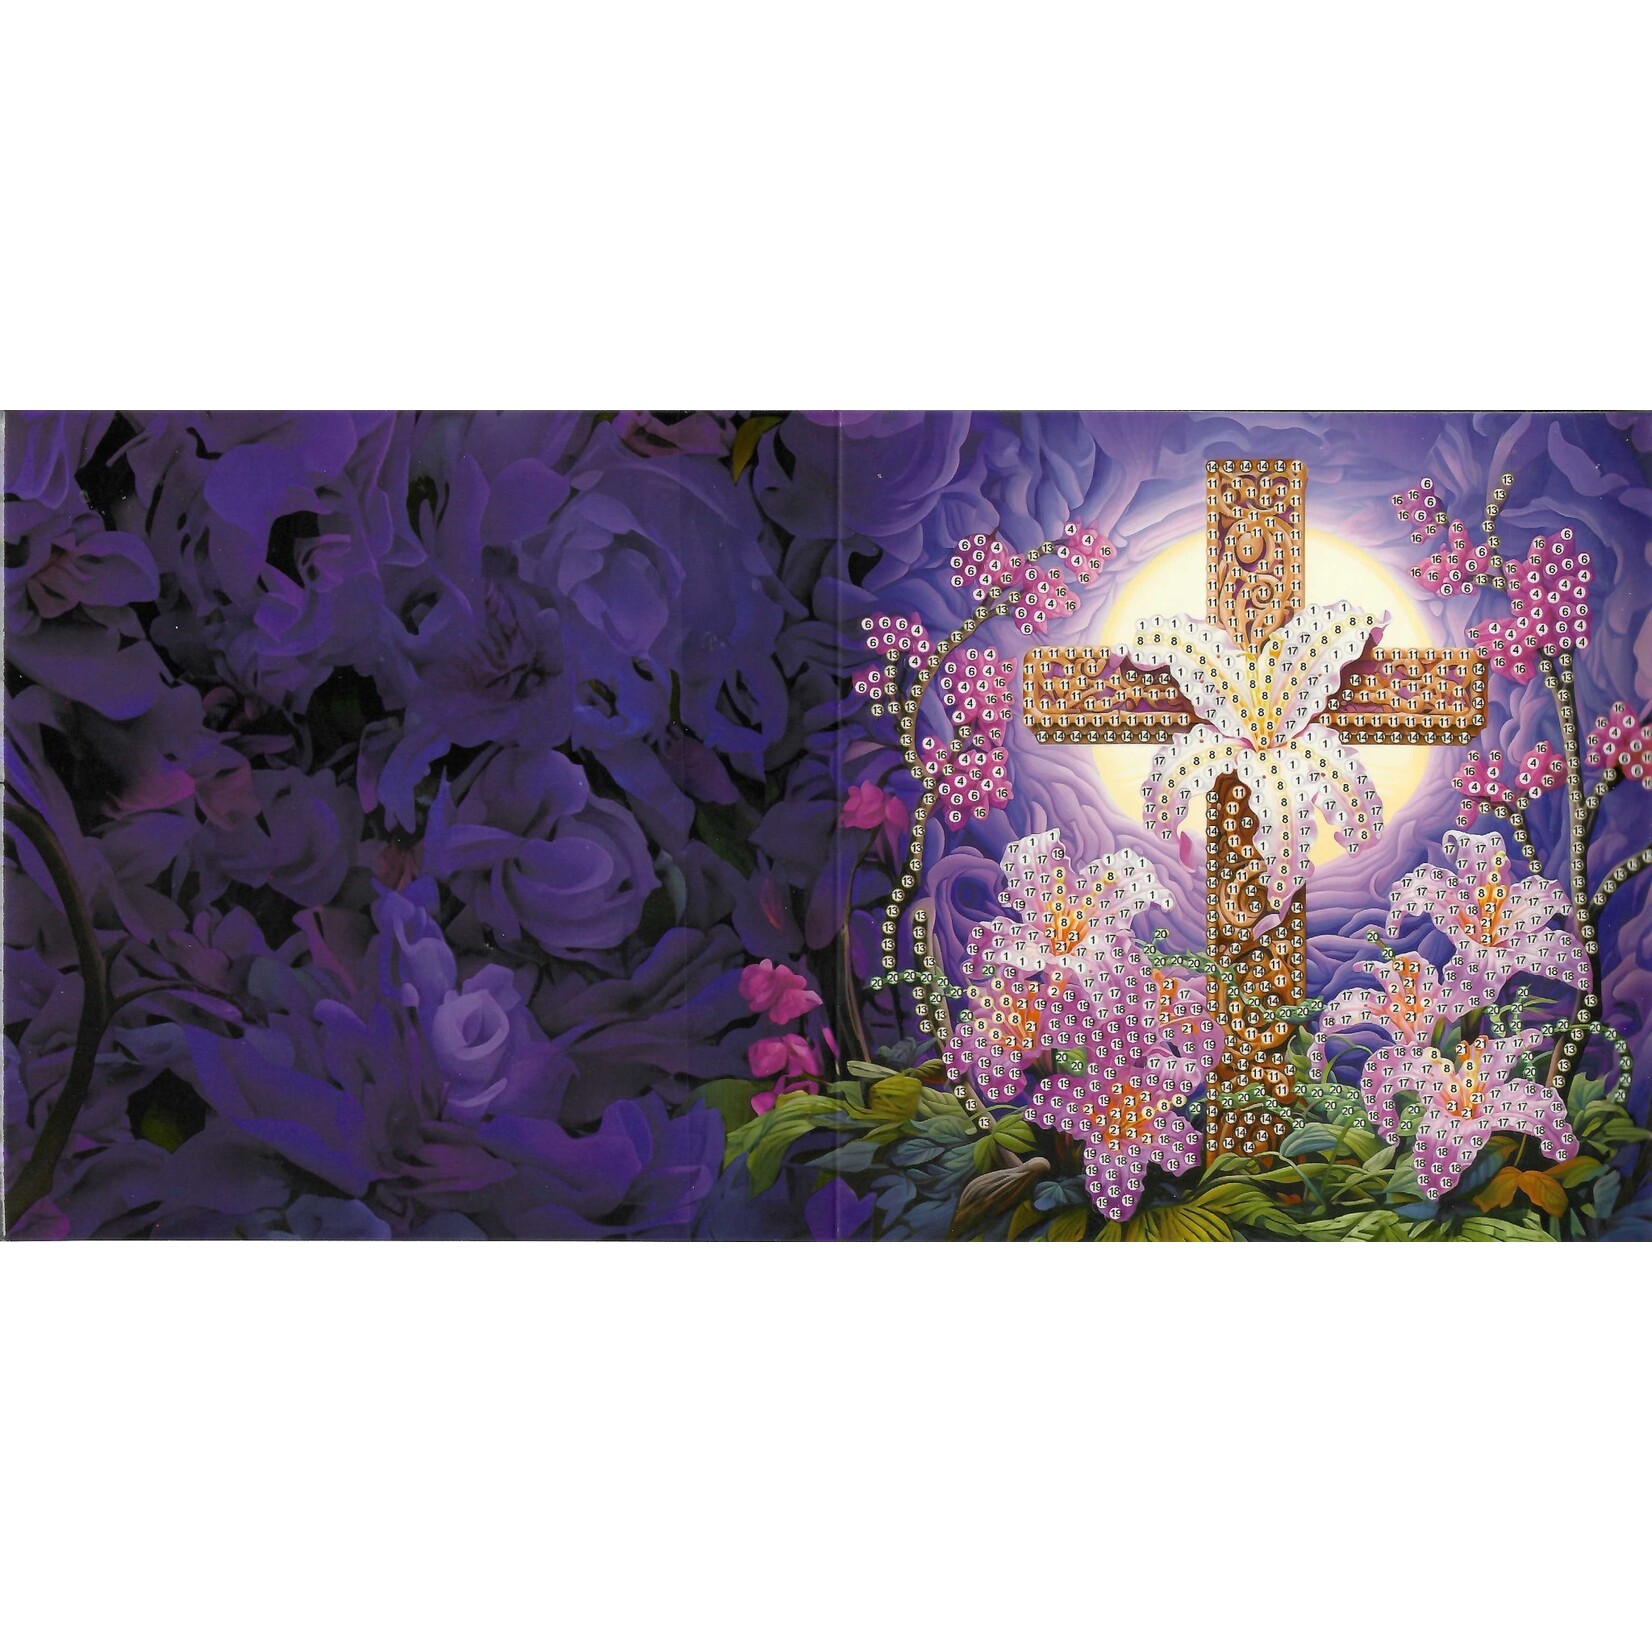 Wenskaart – Kruis 2 omringd door bloemen